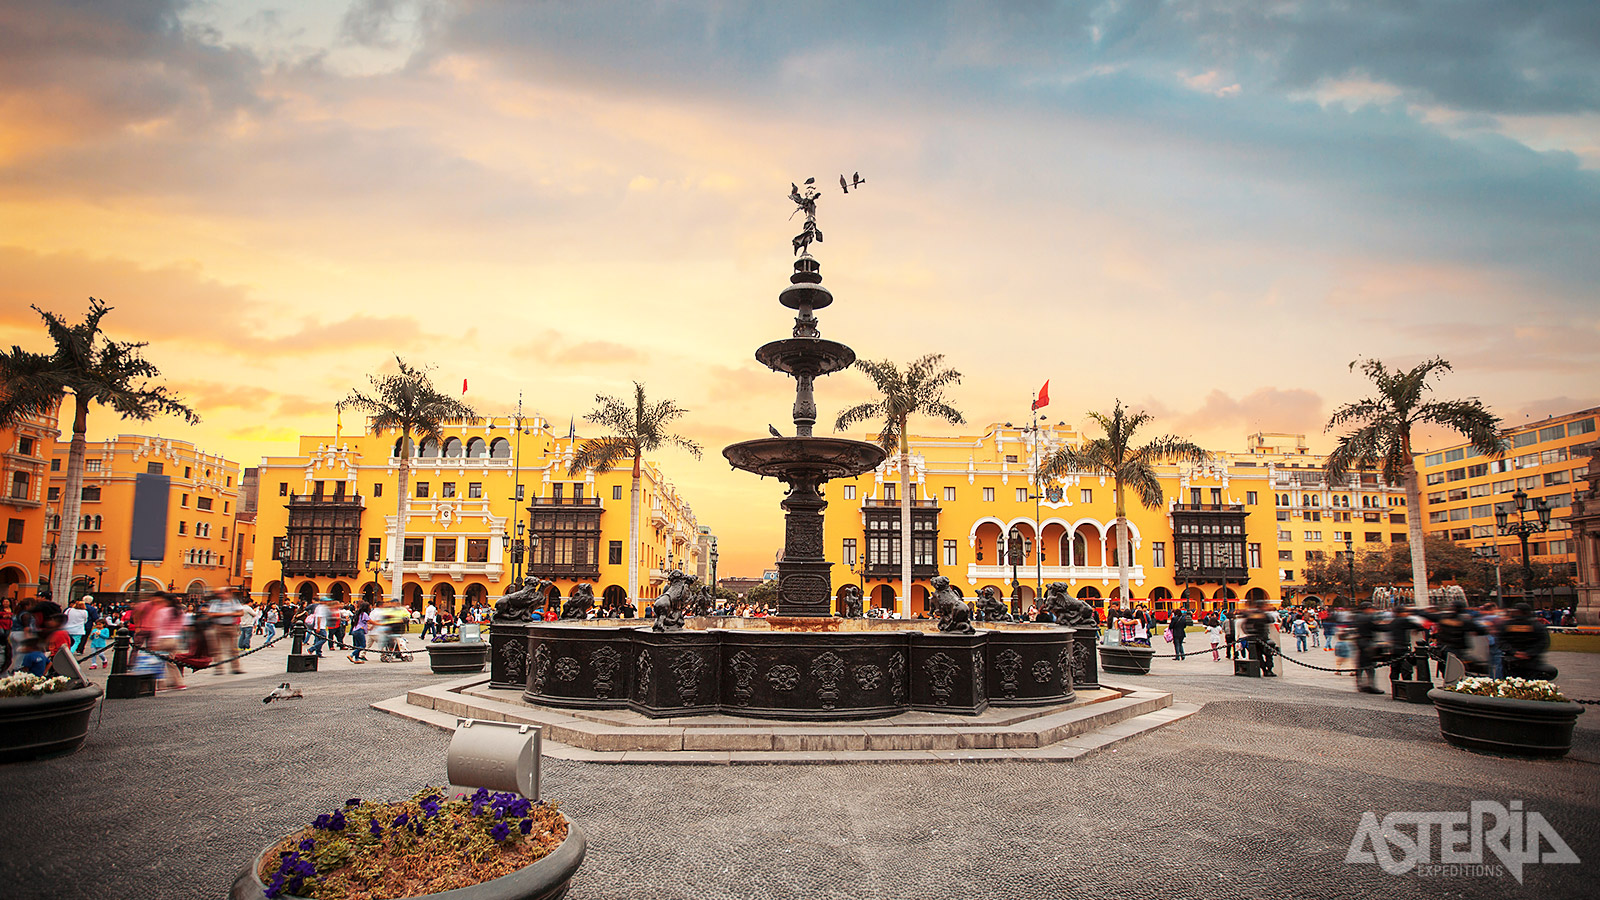 Onder de schaduw van de majestueuze kathedraal van Lima, omringd door het paleis en koloniale gebouwen vind je een prachtige antieke fontein